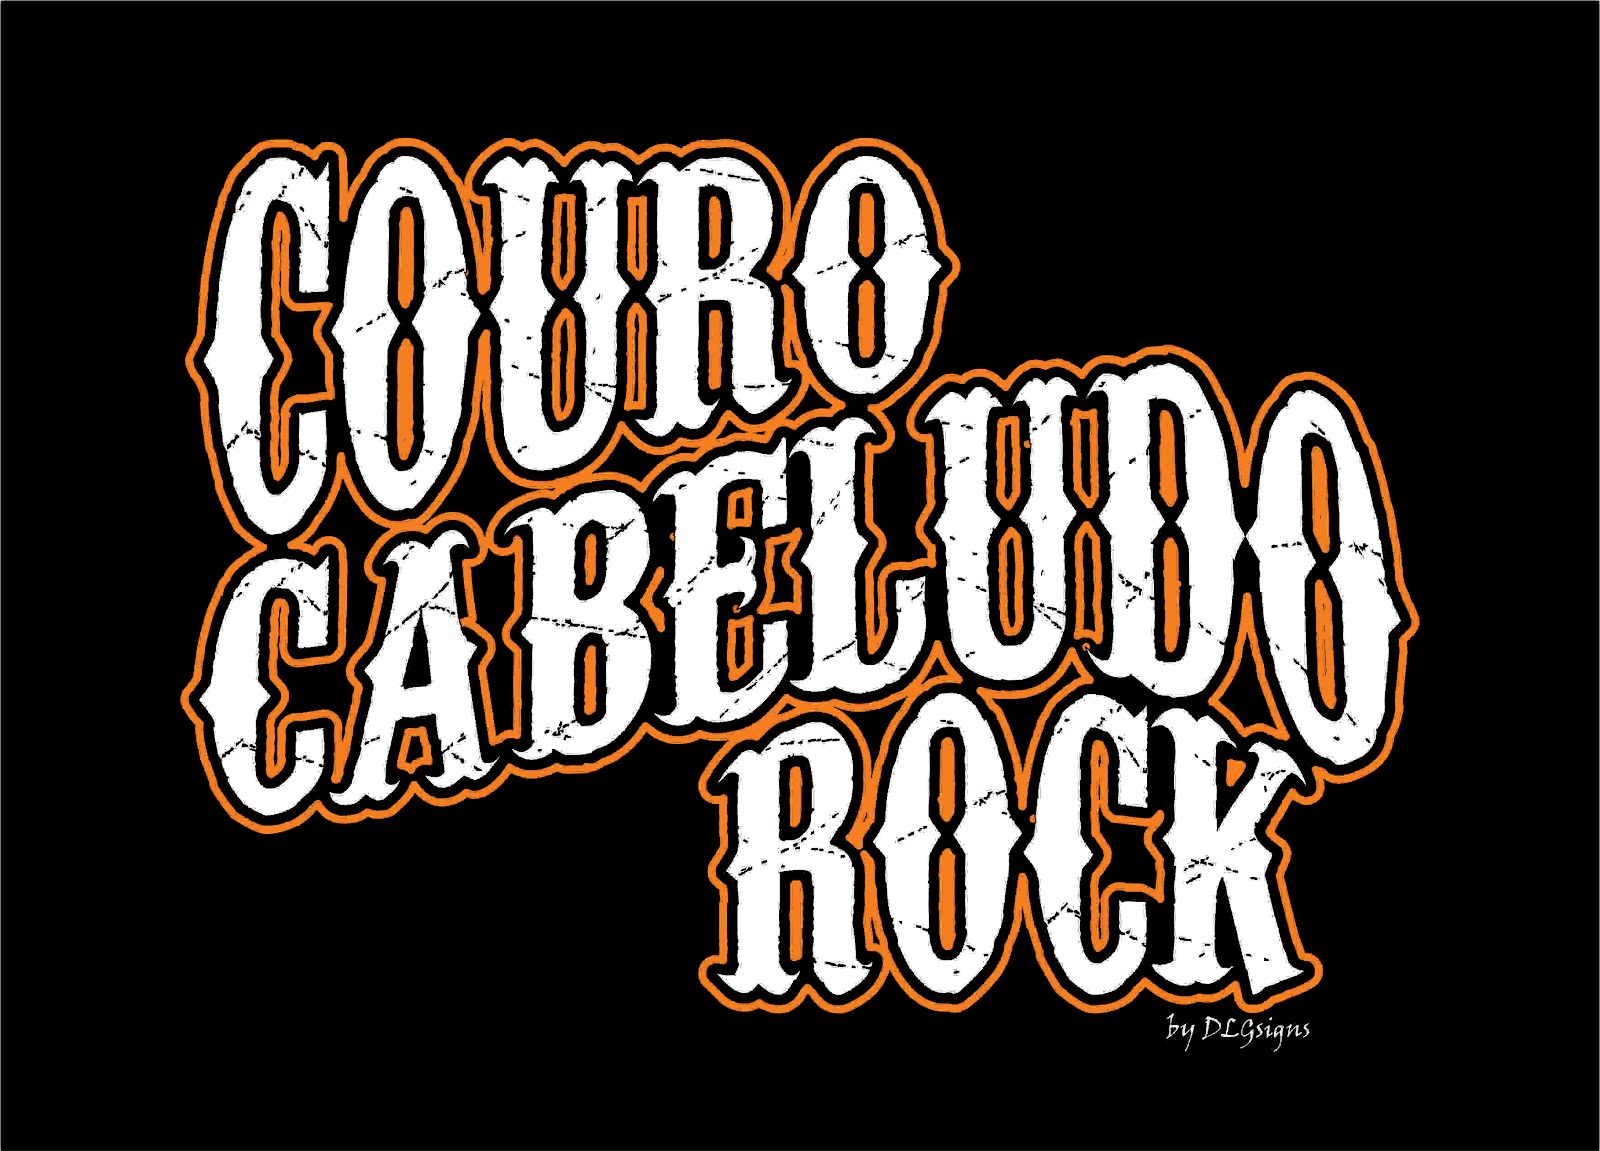 Couro Cabeludo Rock